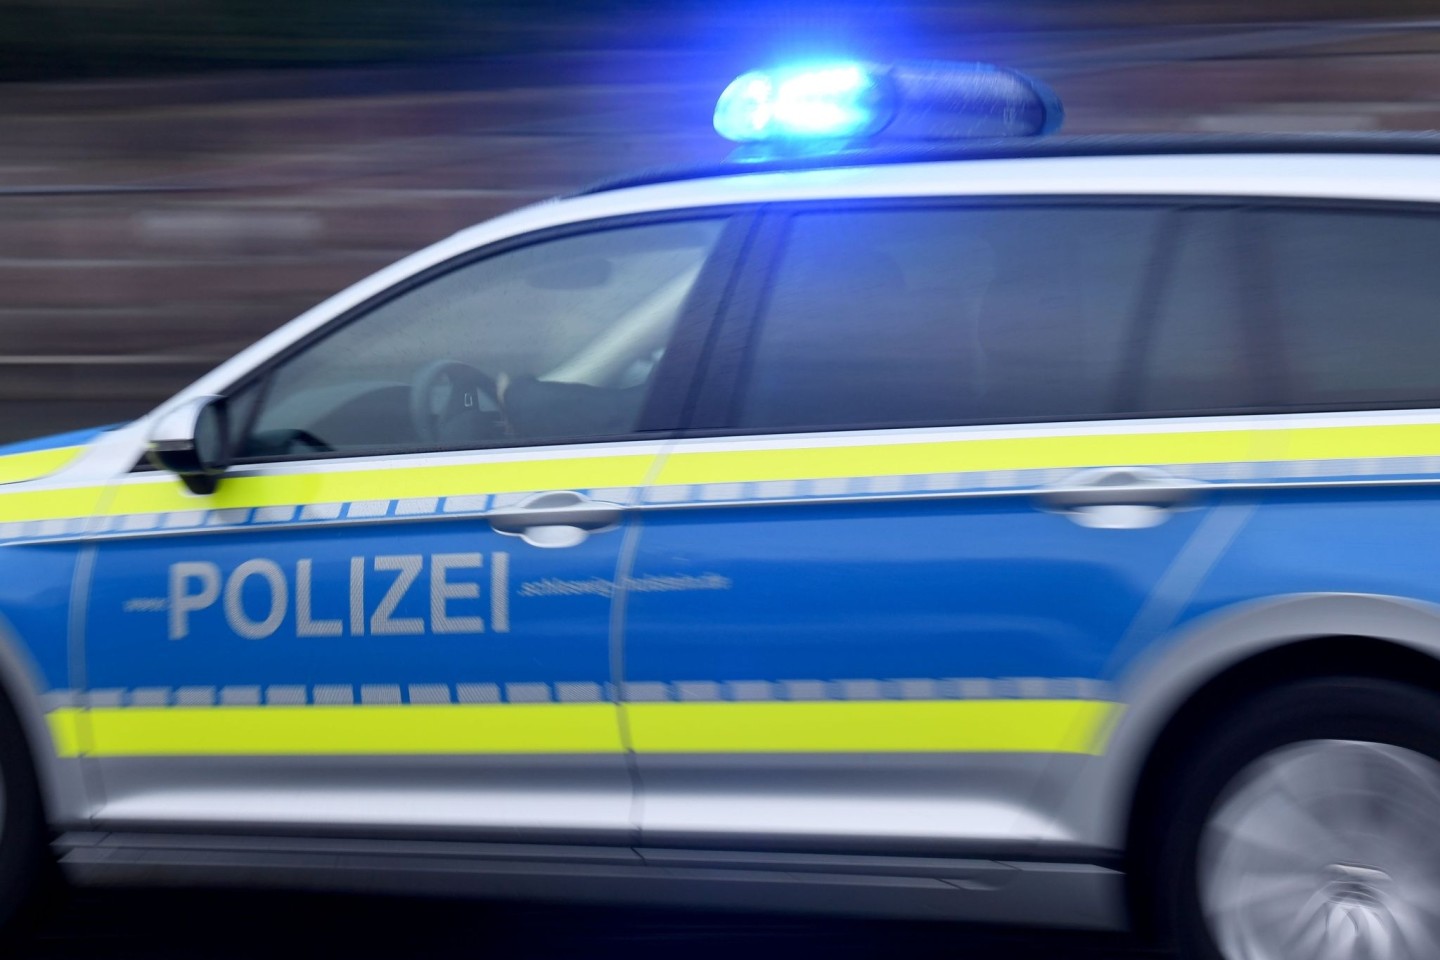 Die Polizei ermittelt nach einer Messerattacke in einem Bus in Mecklenburg-Vorpommern.